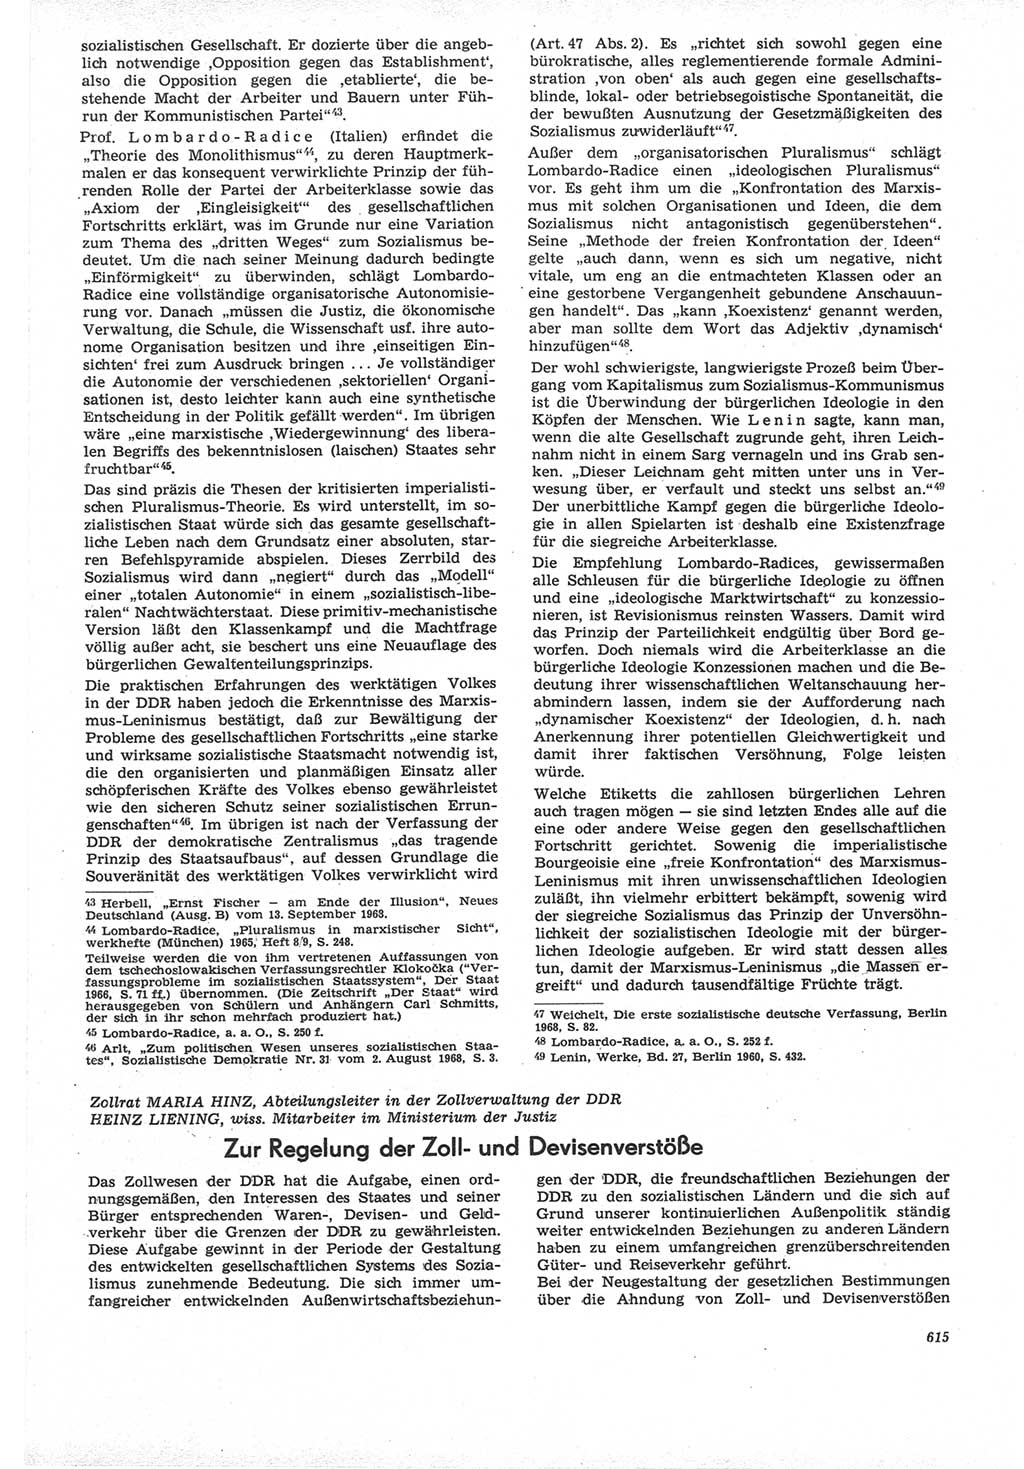 Neue Justiz (NJ), Zeitschrift für Recht und Rechtswissenschaft [Deutsche Demokratische Republik (DDR)], 22. Jahrgang 1968, Seite 615 (NJ DDR 1968, S. 615)